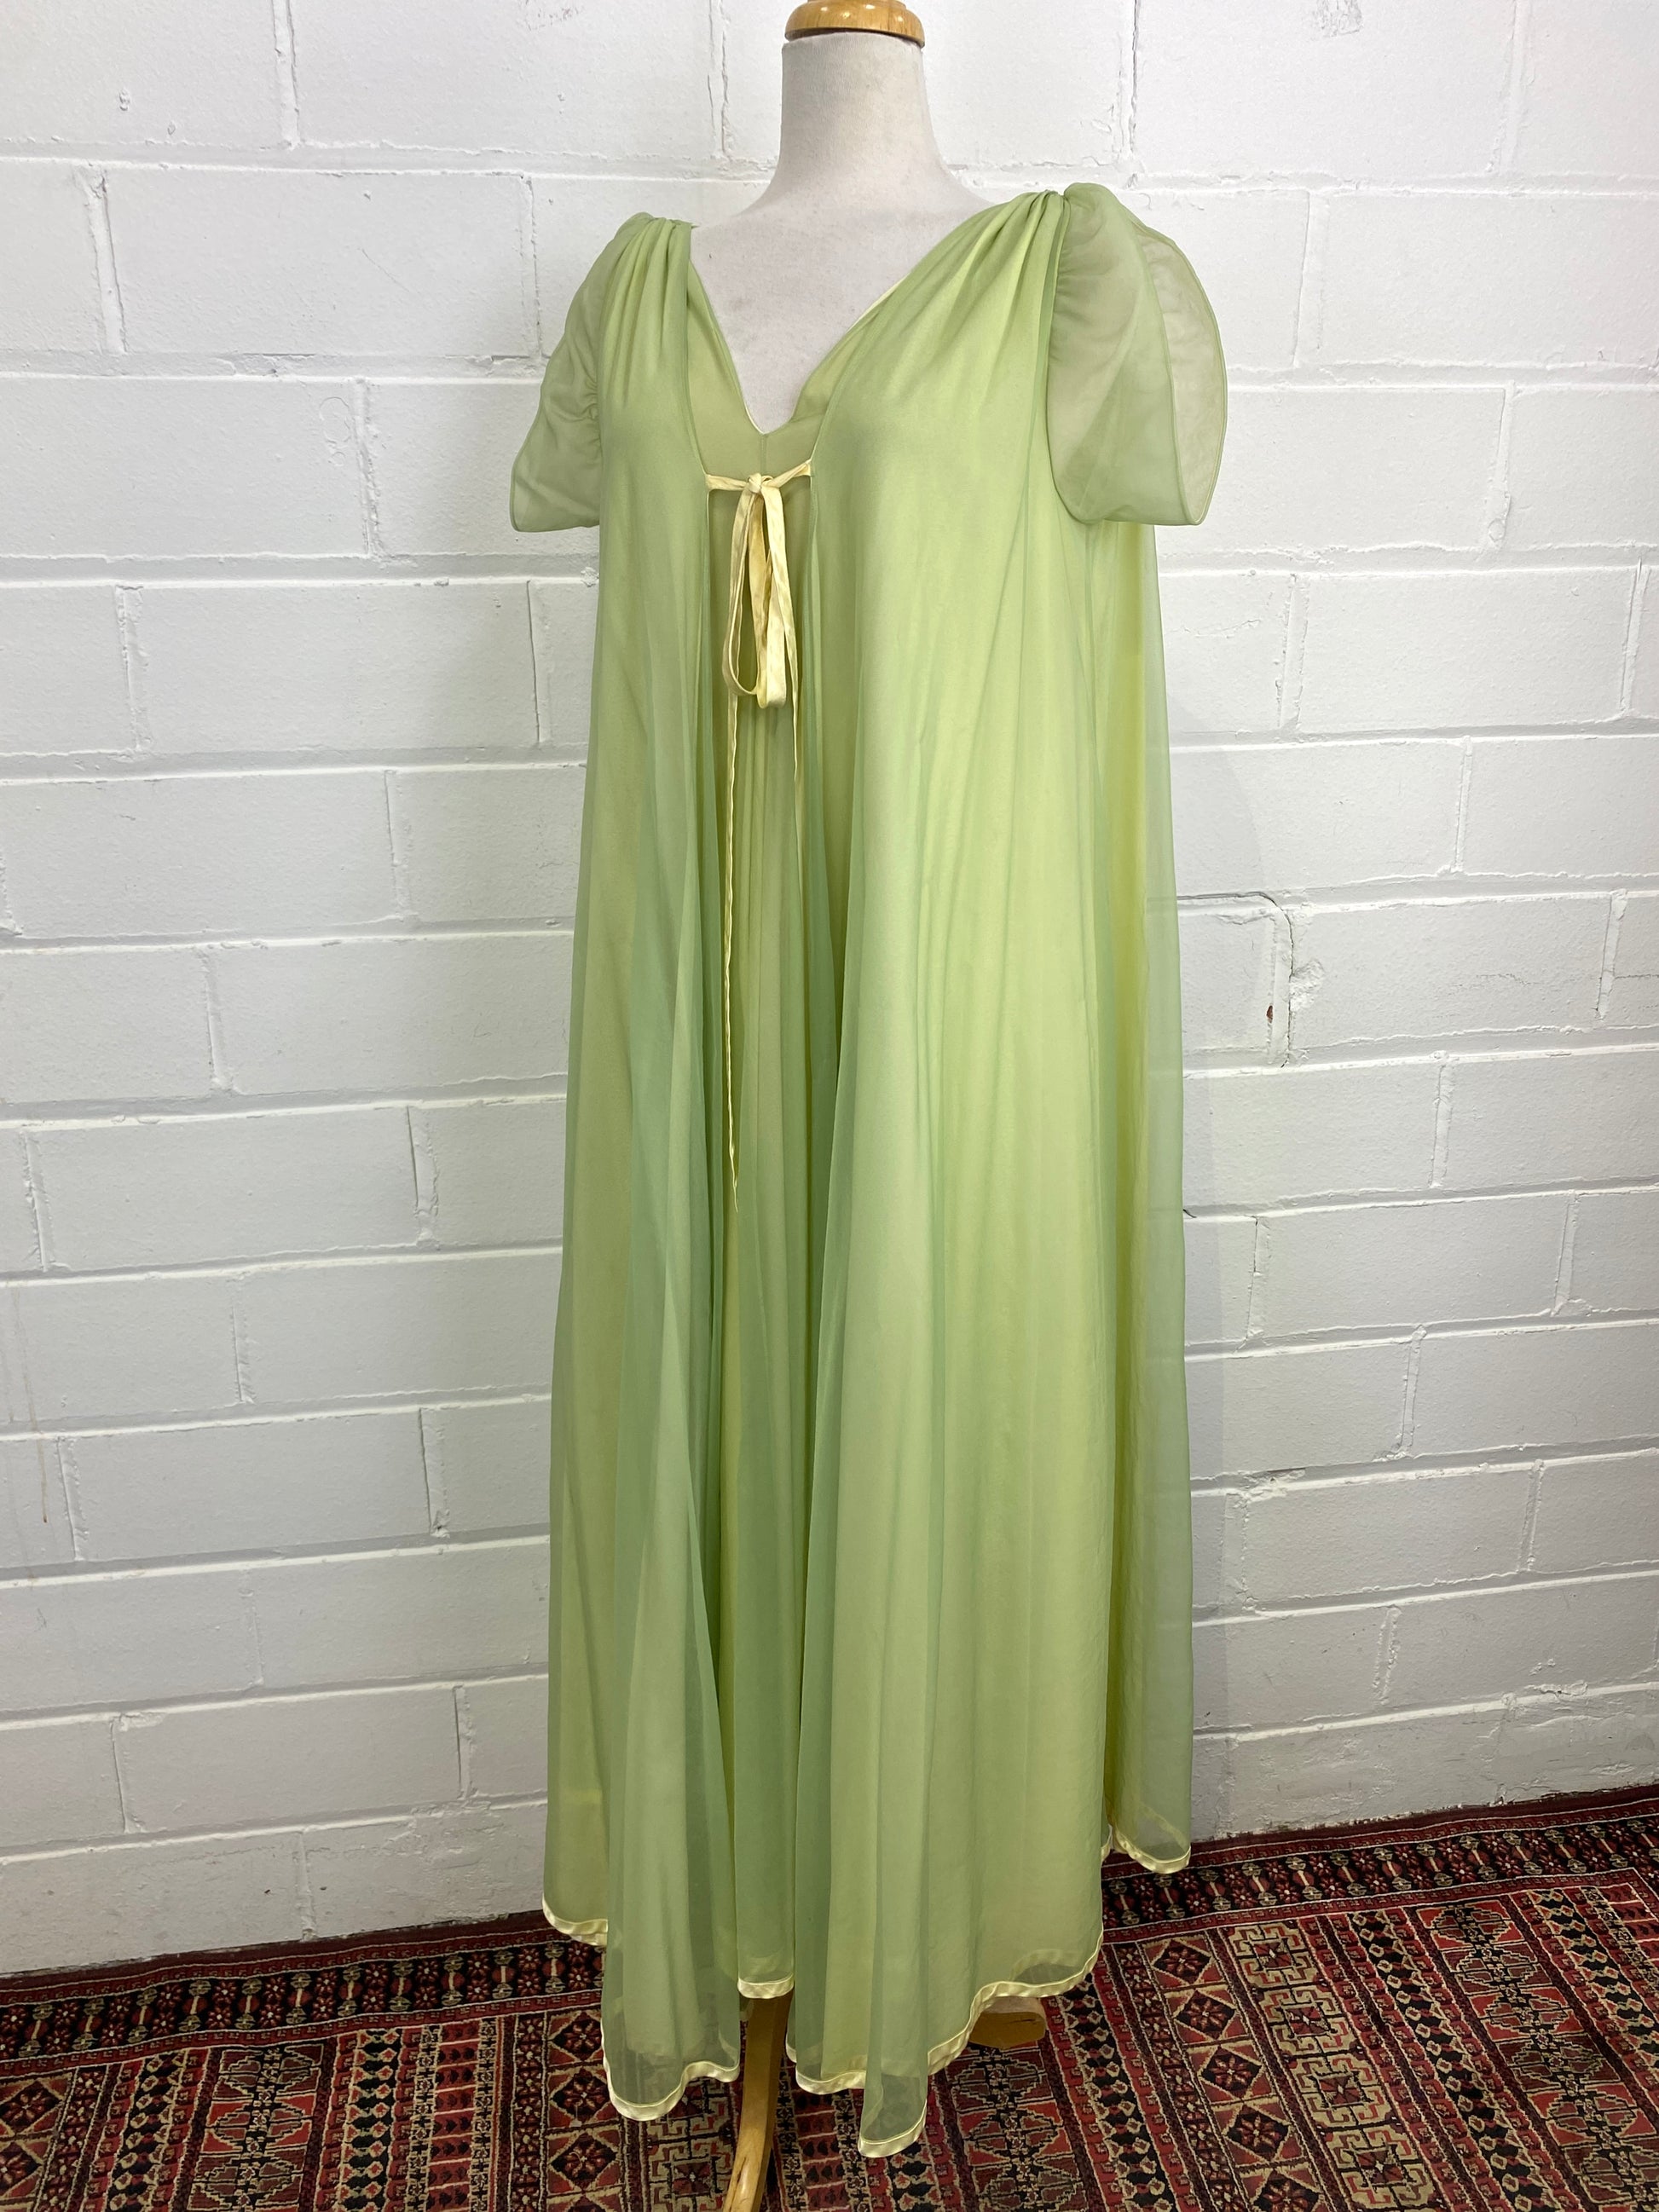 Plus Size Full Figure Long Gown Peignoir Lingerie Set